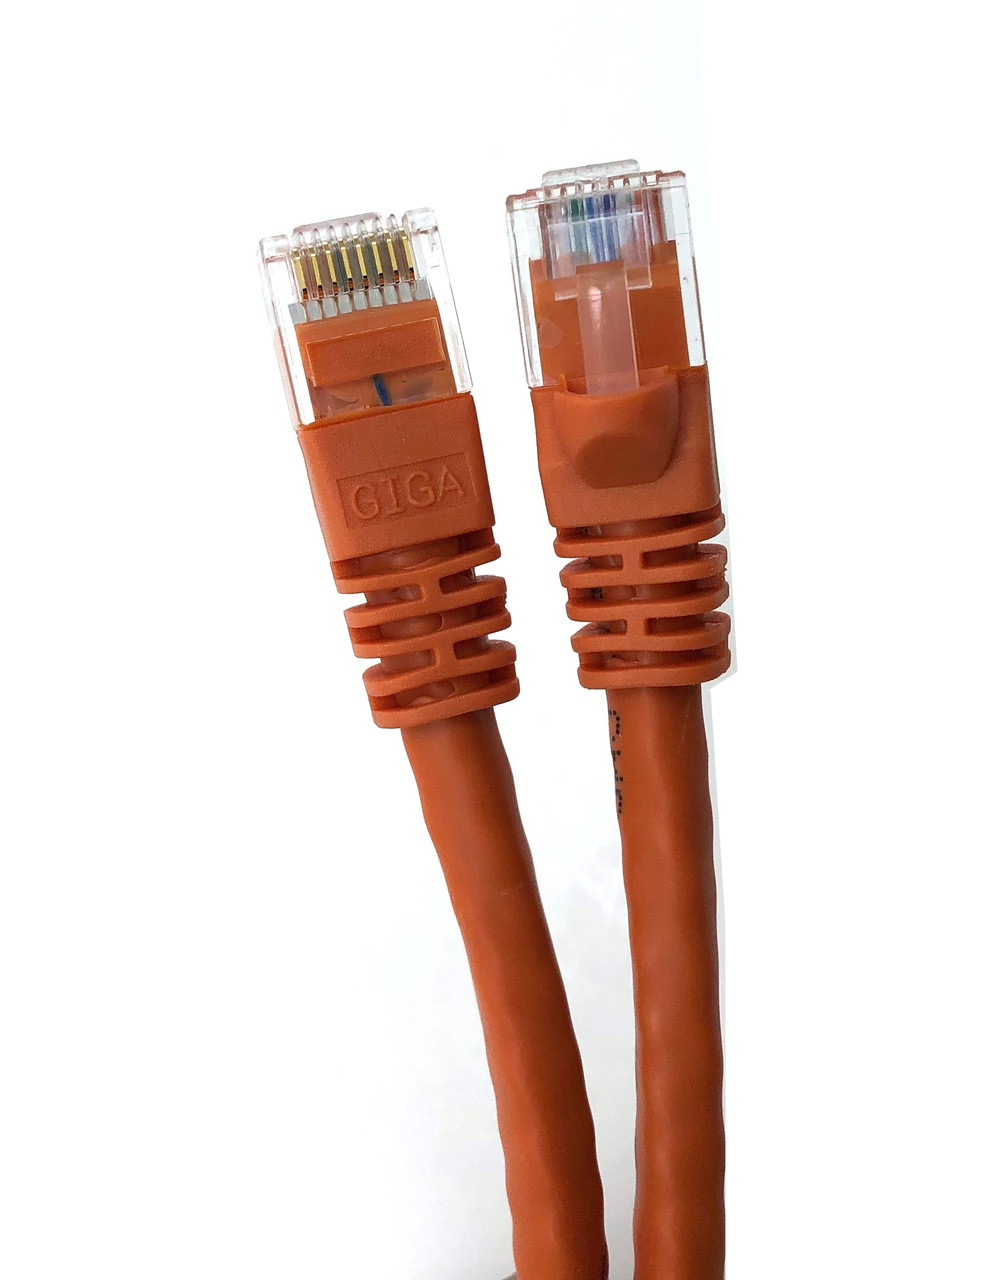 14ft Cat5E UTP Patch Cable (Orange)